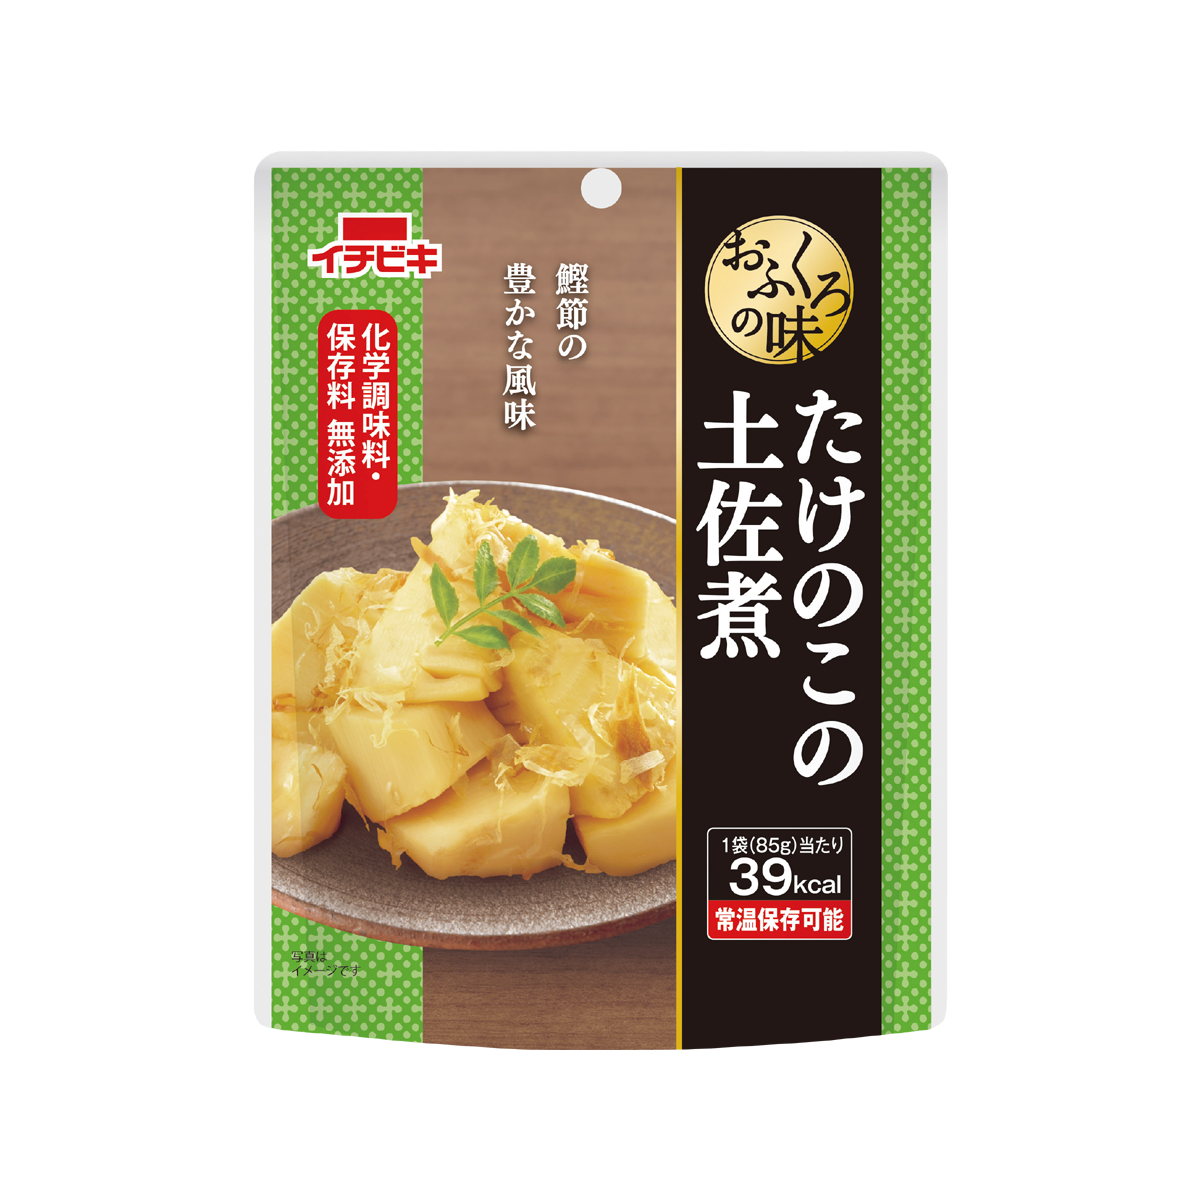 おふくろの味 たけのこの土佐煮 | イチビキ 公式サイト | 名古屋のみそ・しょうゆ・つゆメーカー